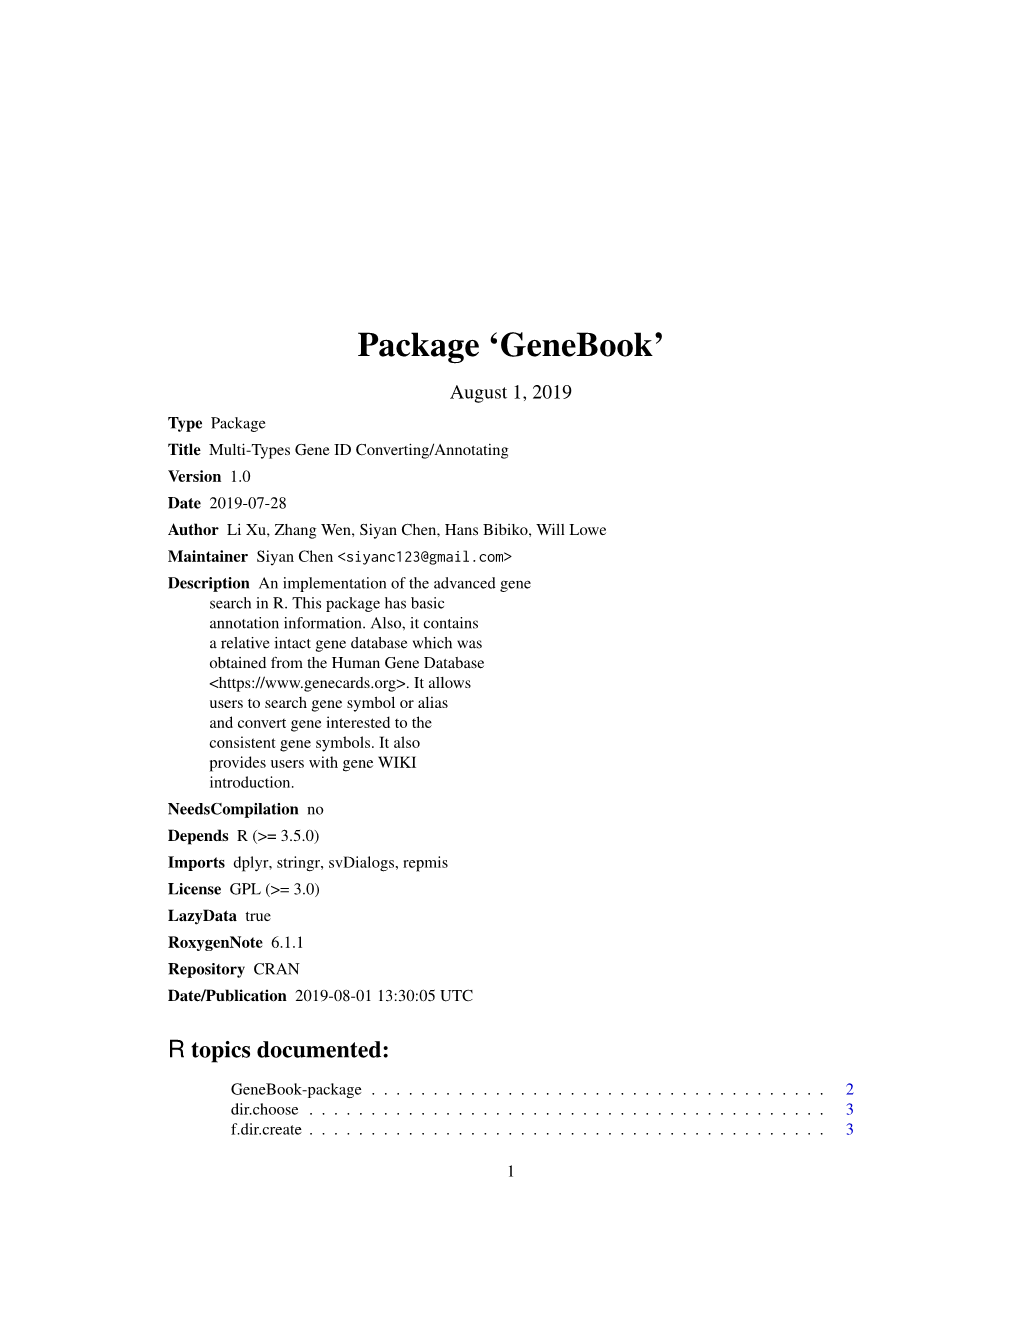 Package 'Genebook'